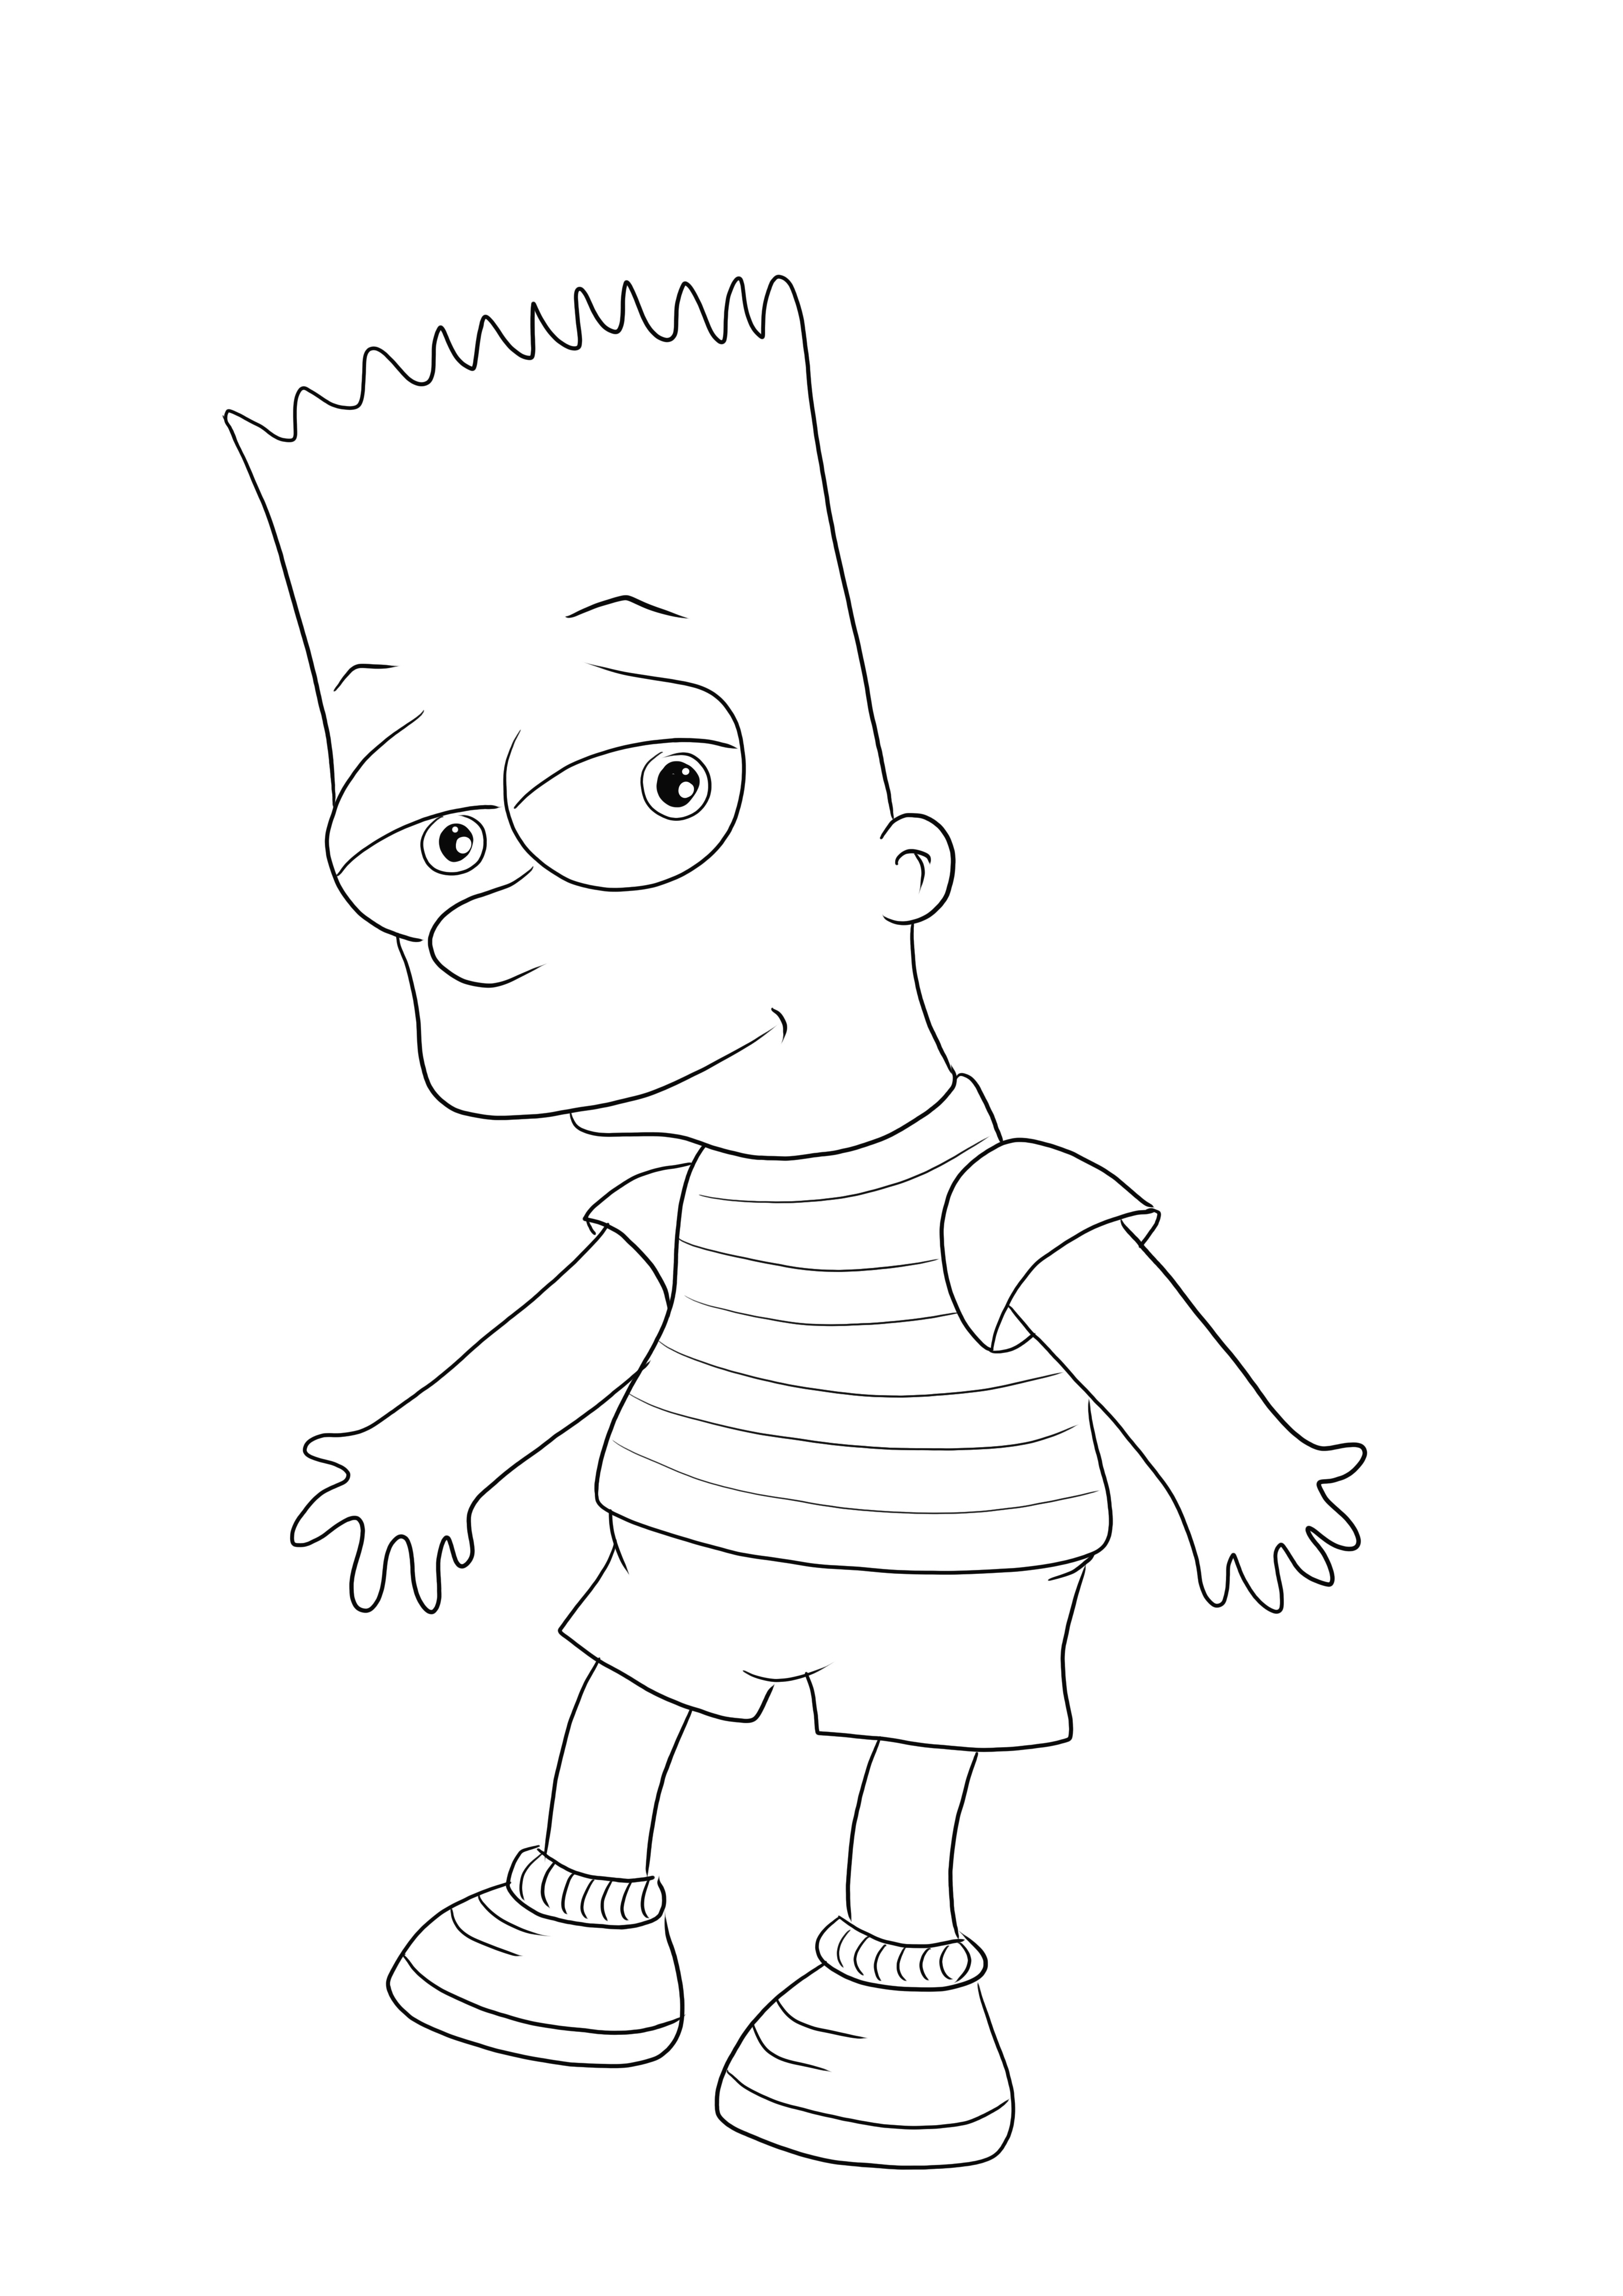 Bart Simpson adalah cetakan gratis kami untuk mewarnai atau mengunduh dengan mudah